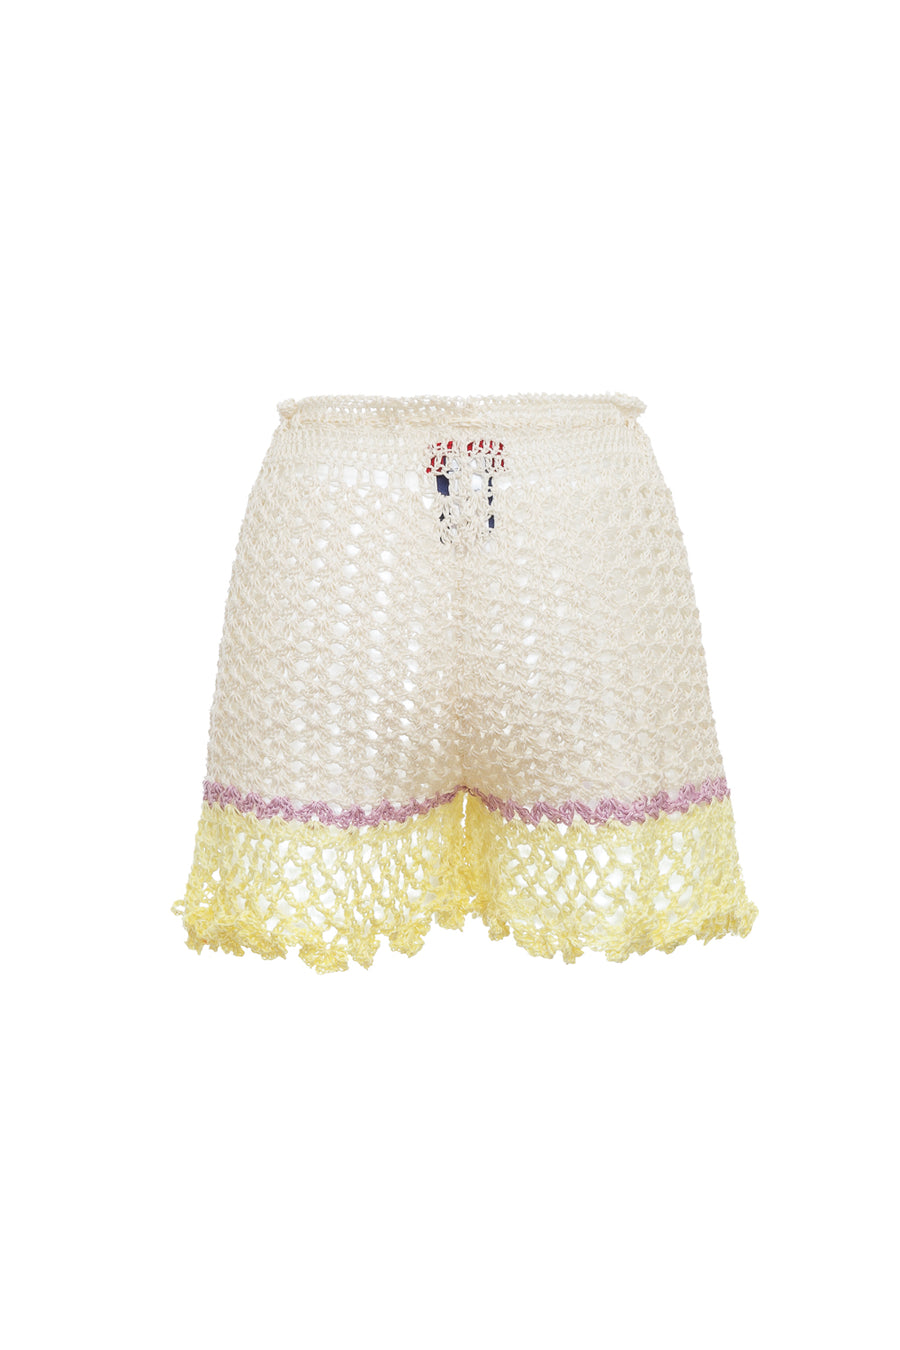 andreeva women's white handmade crochet shorts